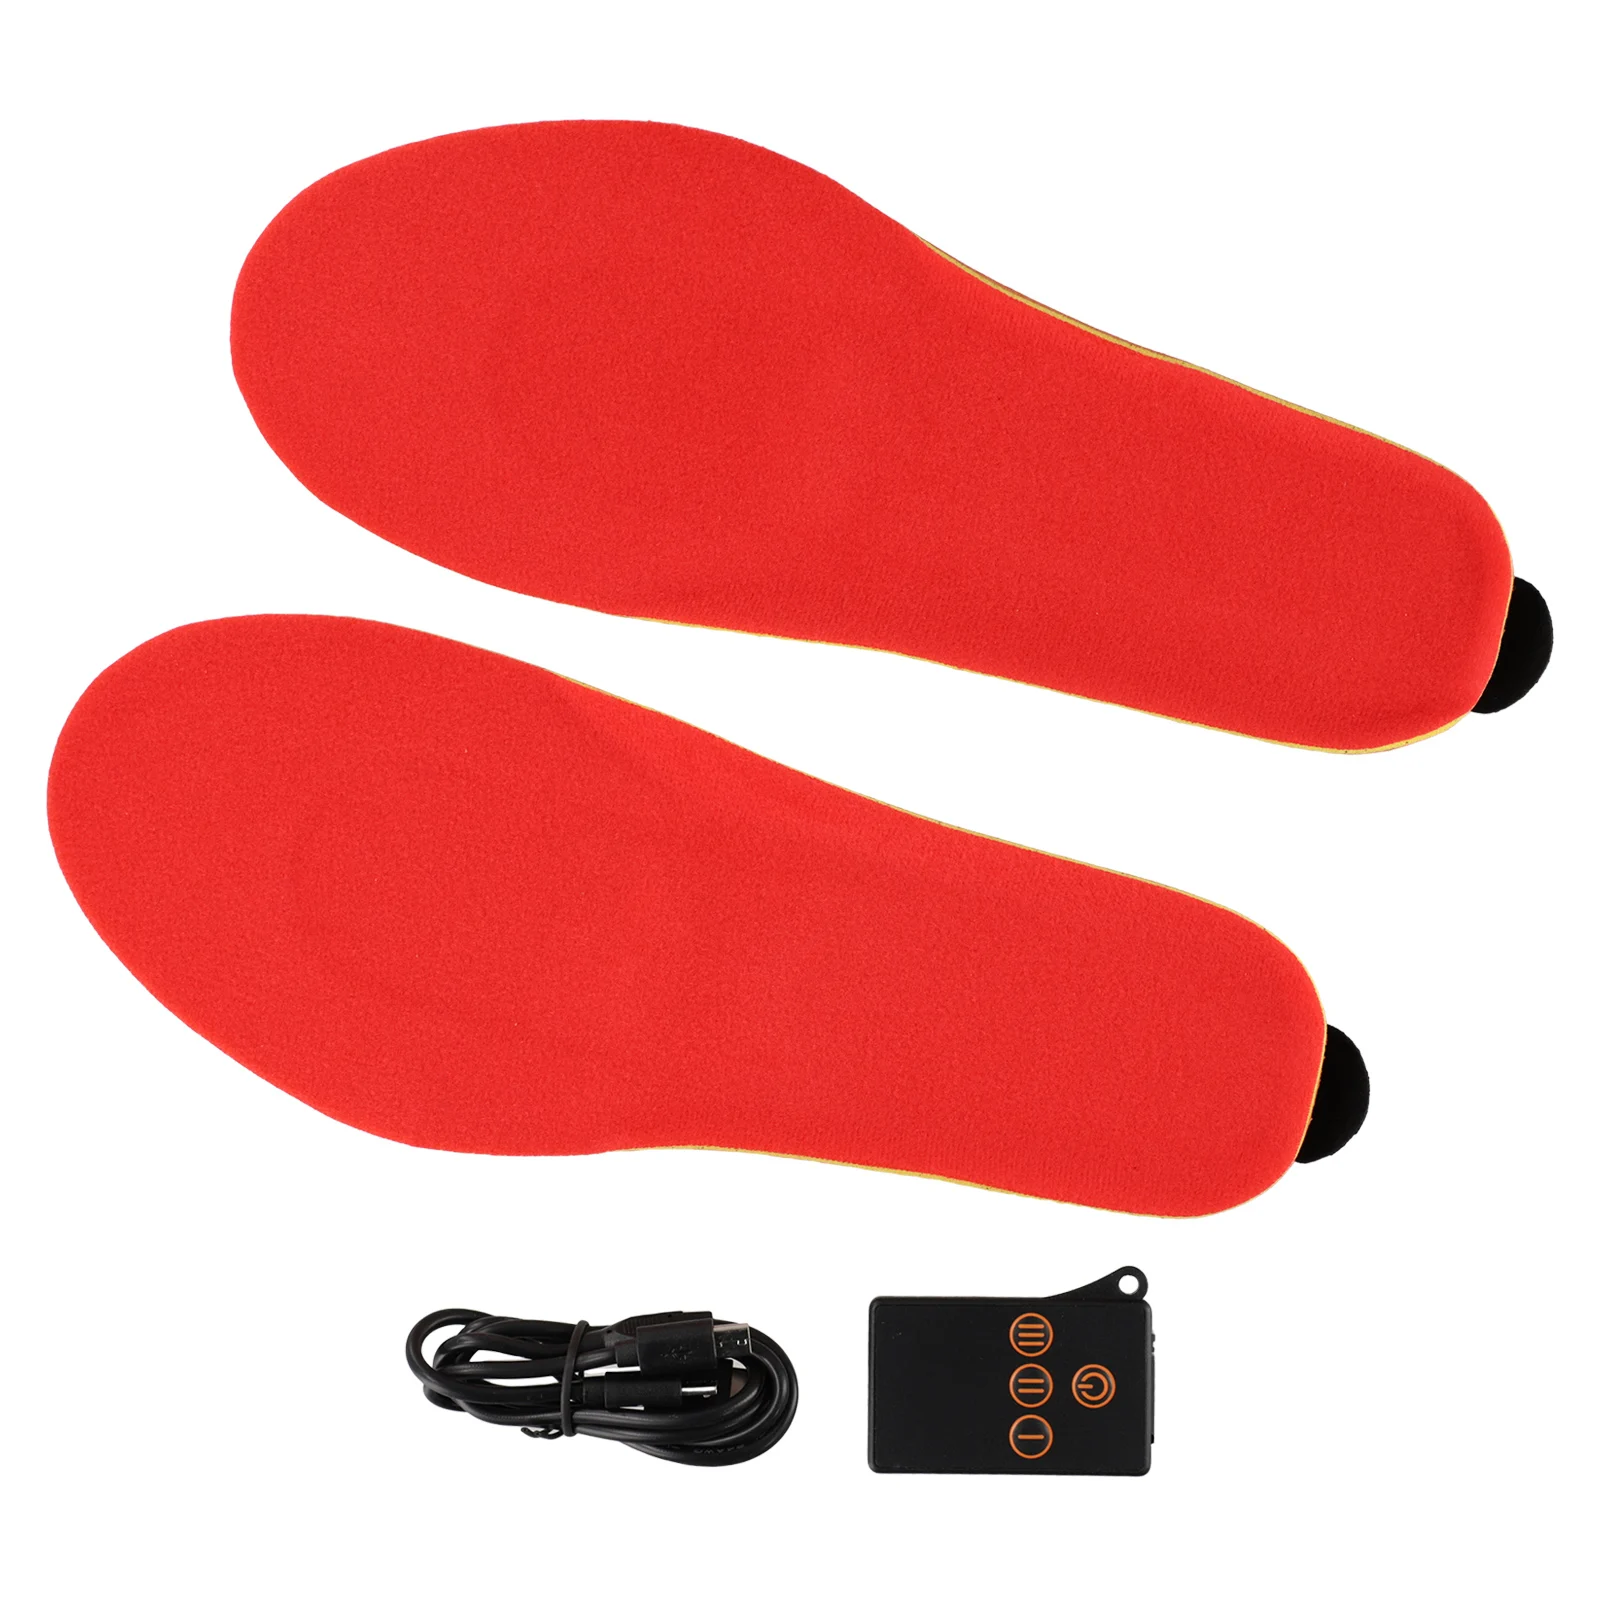 USB-стельки с подогревом для обуви Беспроводное управление Высокая эффективность нагрева Комфортное и дышащее зимнее тепло для ног Изображение 4